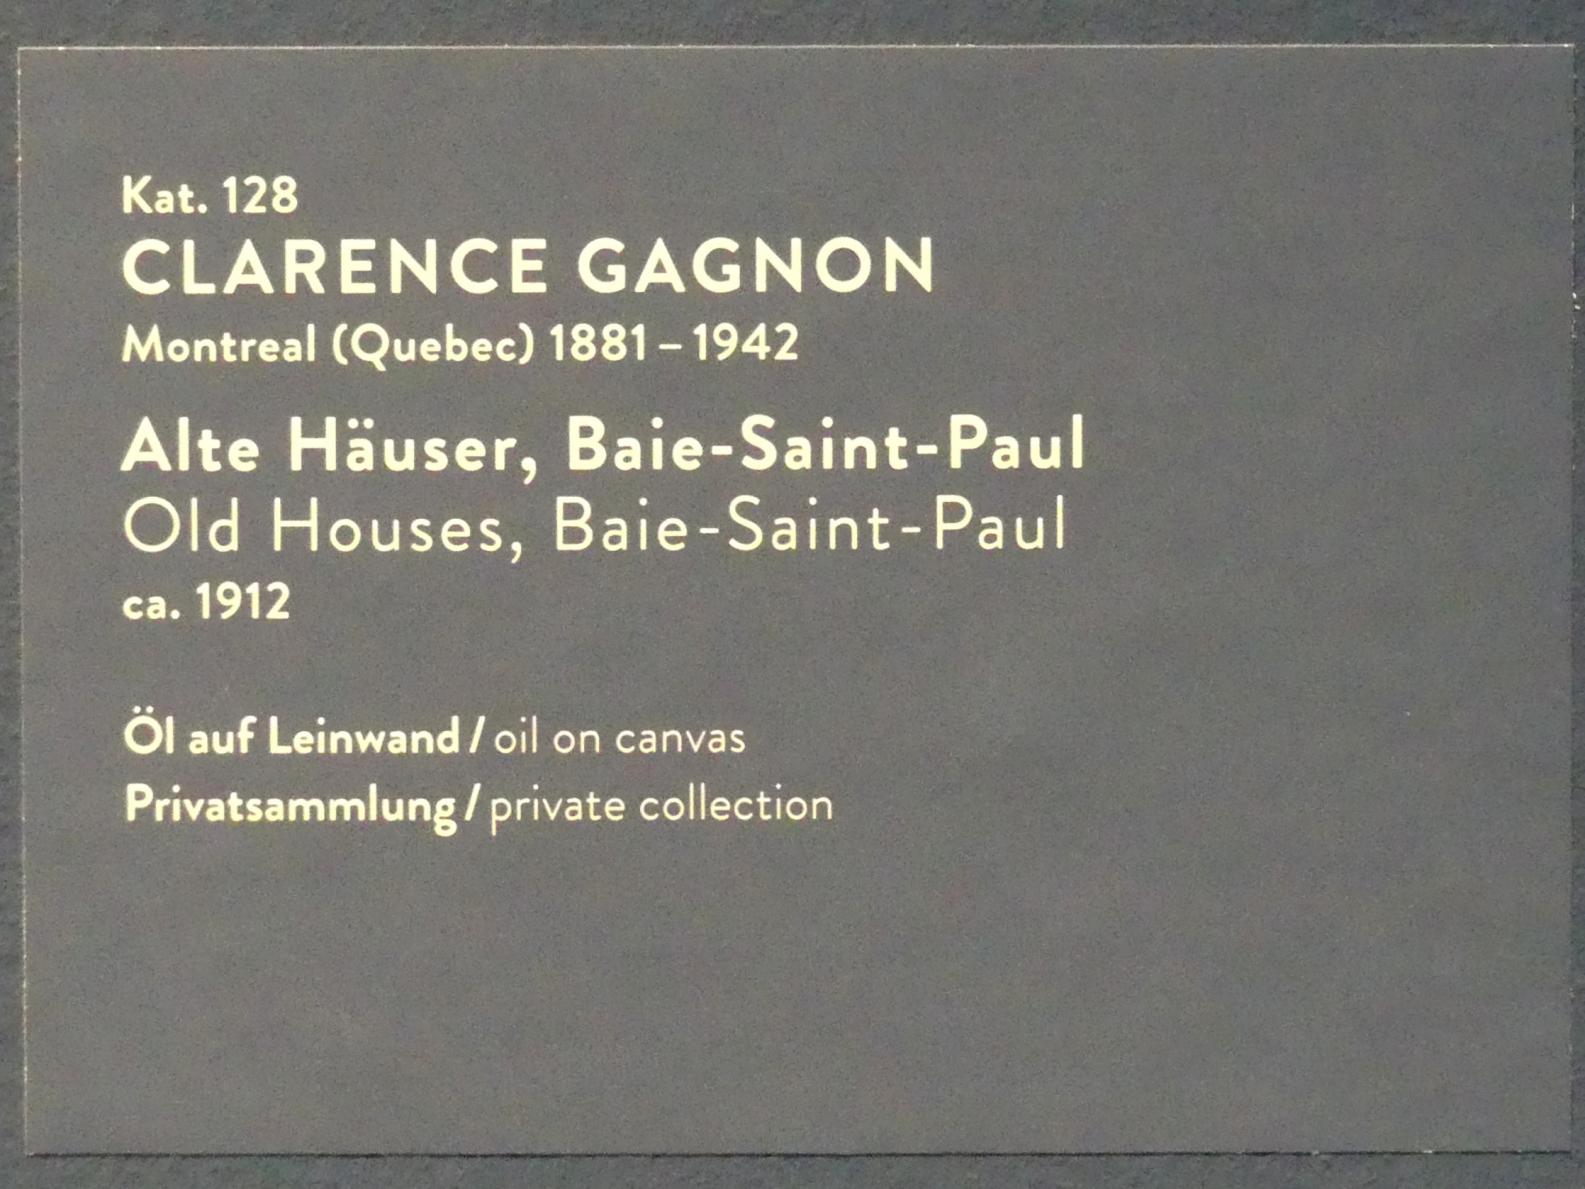 Clarence Gagnon (1907–1916), Alte Häuser, Baie-Saint-Paul, München, Kunsthalle, Ausstellung "Kanada und der Impressionismus" vom 19.07.-17.11.2019, Rückkehr nach Kanada, um 1912, Bild 2/2